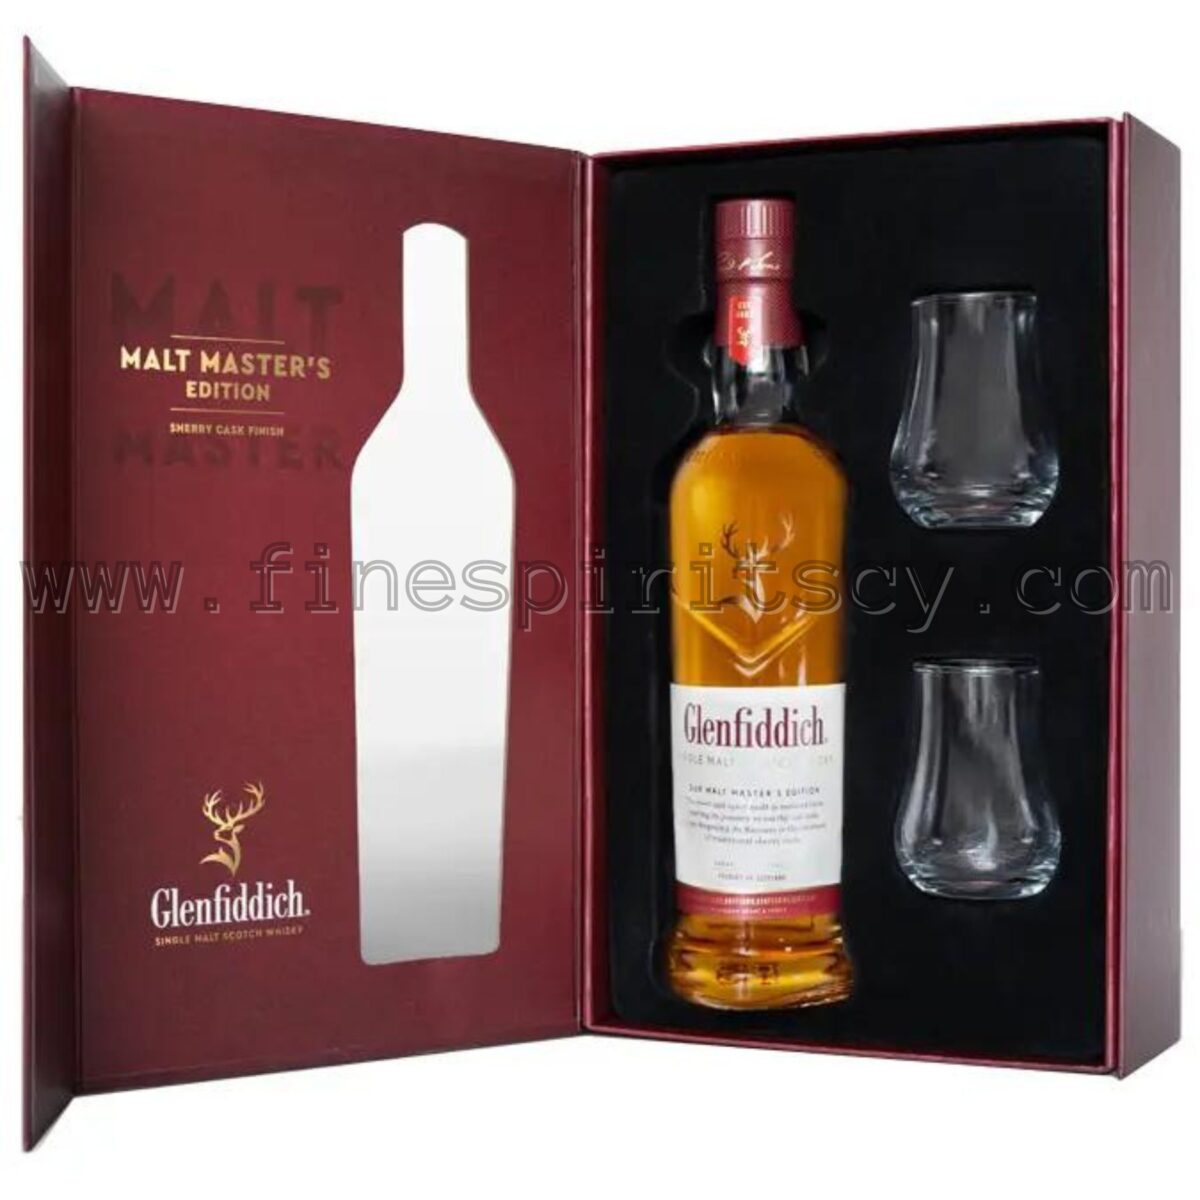 Glenfiddich Malt Master's Sherry 2 Nosing Glasses Glencairn Open Box Gift Set Idea